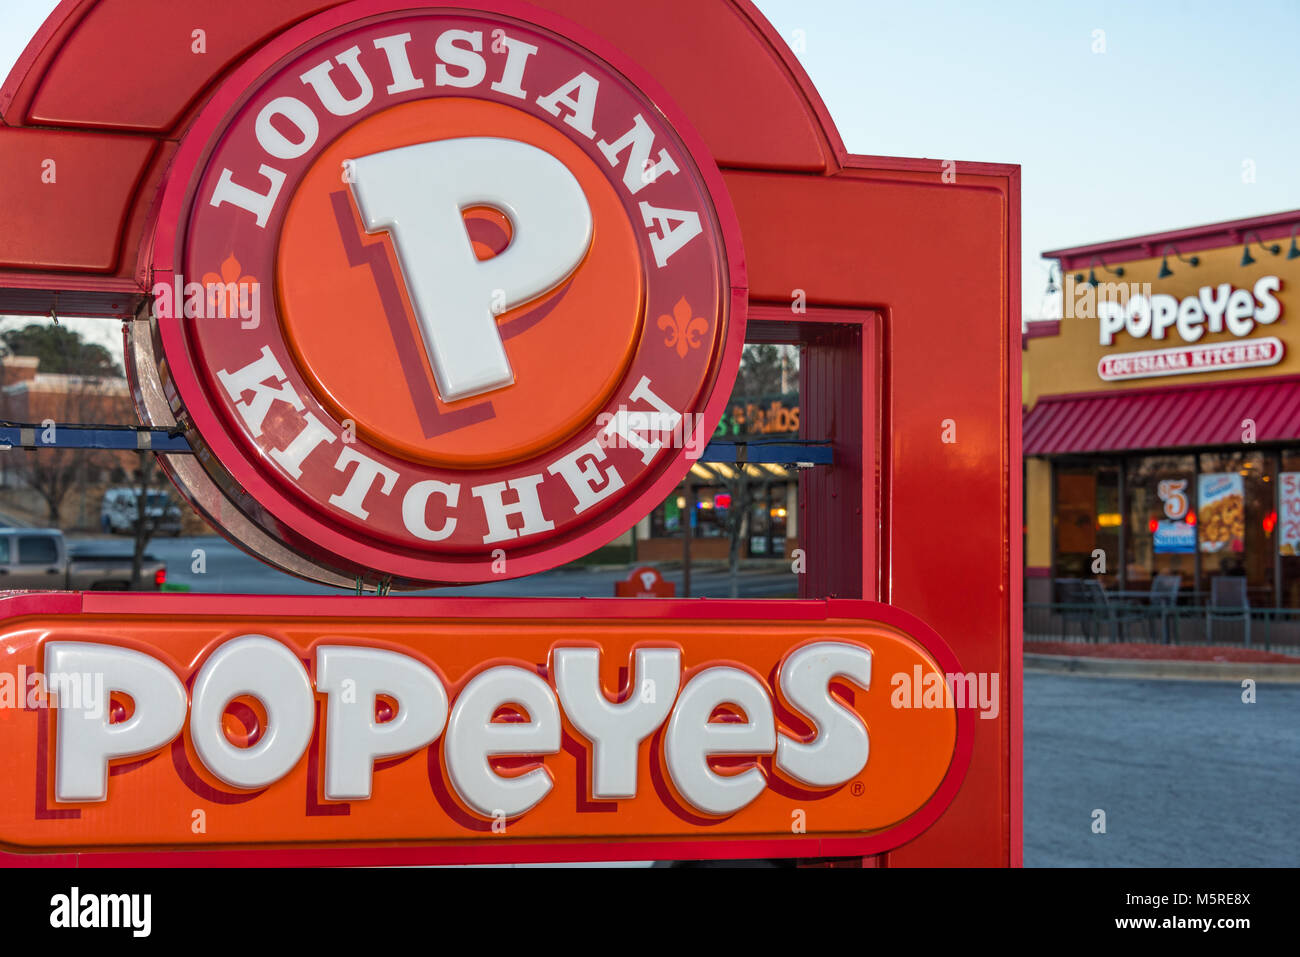 Popeyes Louisiane Cuisine poulet fast-food restaurant de la chaîne dans la région métropolitaine d'Atlanta, Géorgie. Banque D'Images